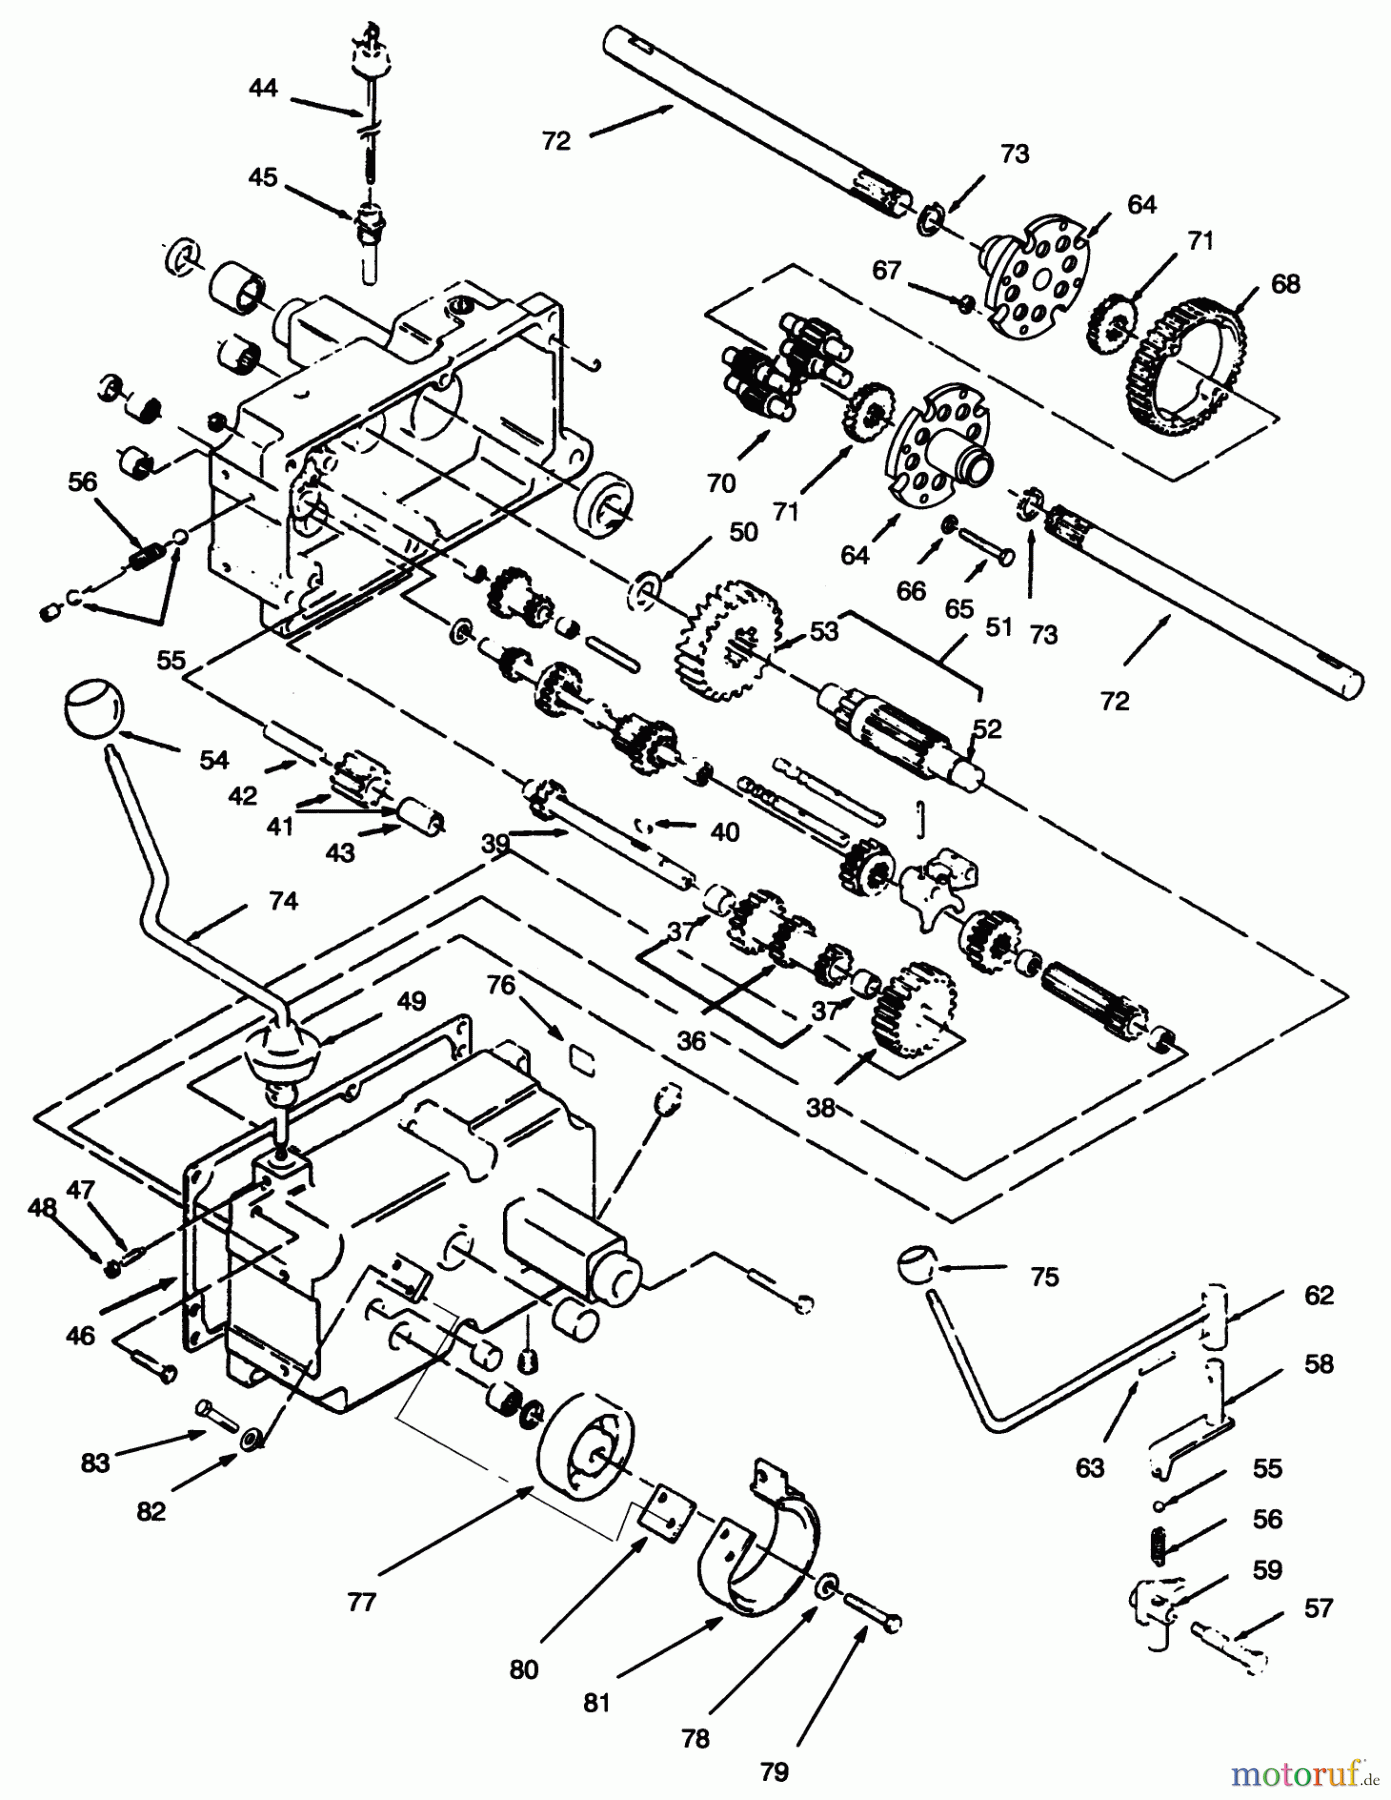  Toro Neu Mowers, Lawn & Garden Tractor Seite 1 73420 (416-8) - Toro 416-8 Garden Tractor, 1996 (6900001-6999999) TRANSMISSION 8-SPEED #2